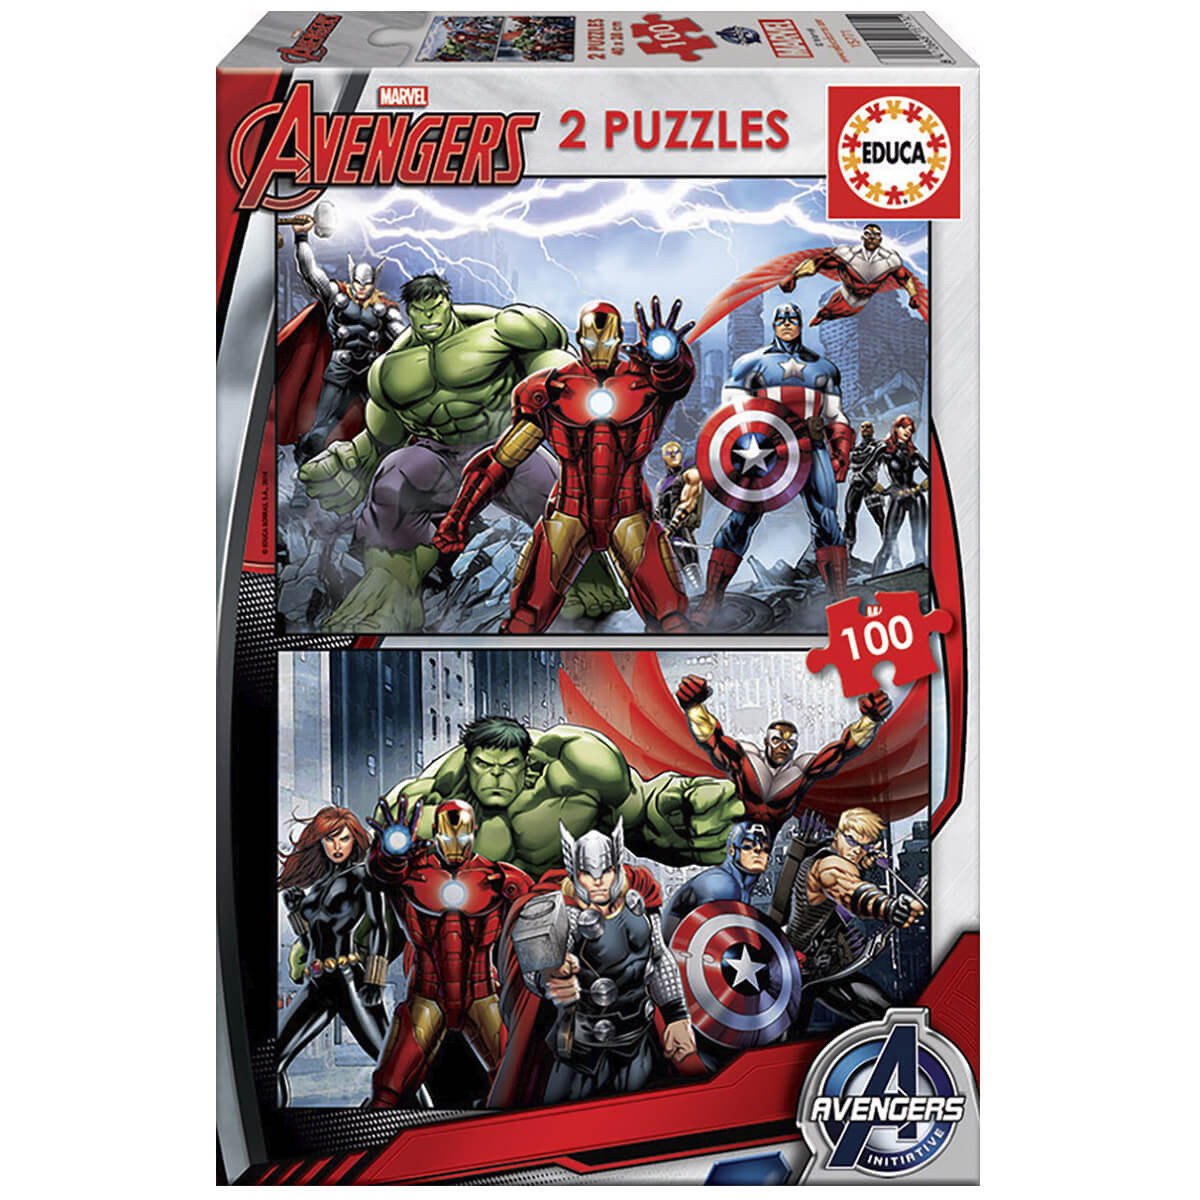 Puzzle Vegadores 100 piezas avengers puz15771 2x100 educa 2 infantiles de partir 6 ref.15771 15771